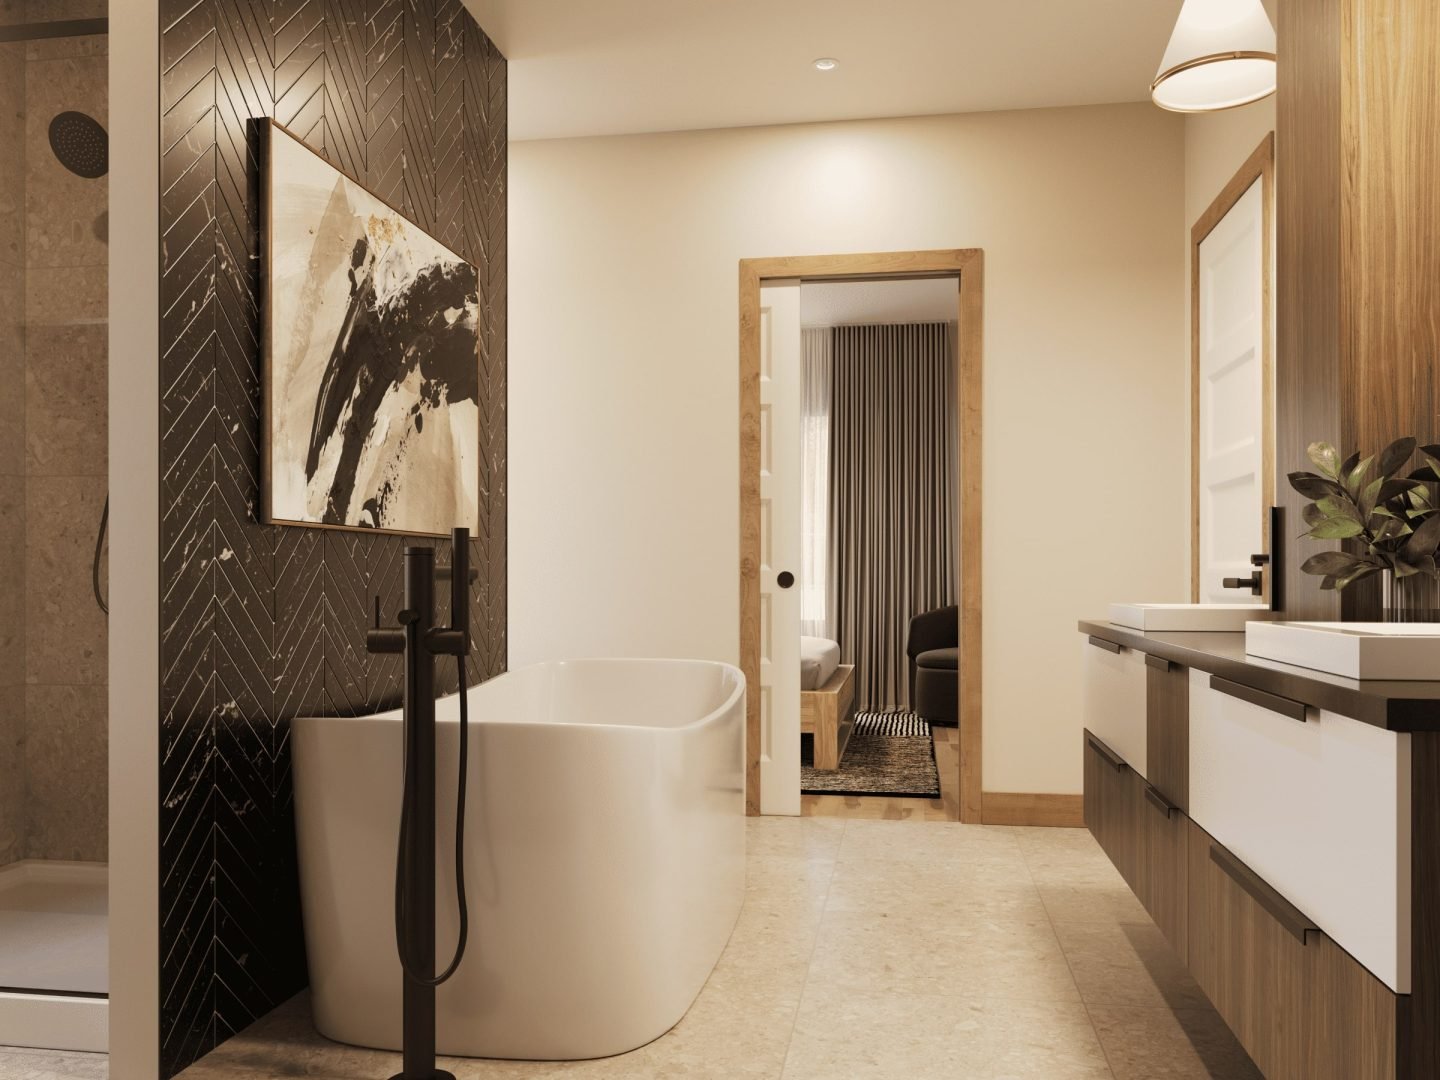 Modèle Belvédère, une maison plain pied style contemporain. Vu de la salle de bain.